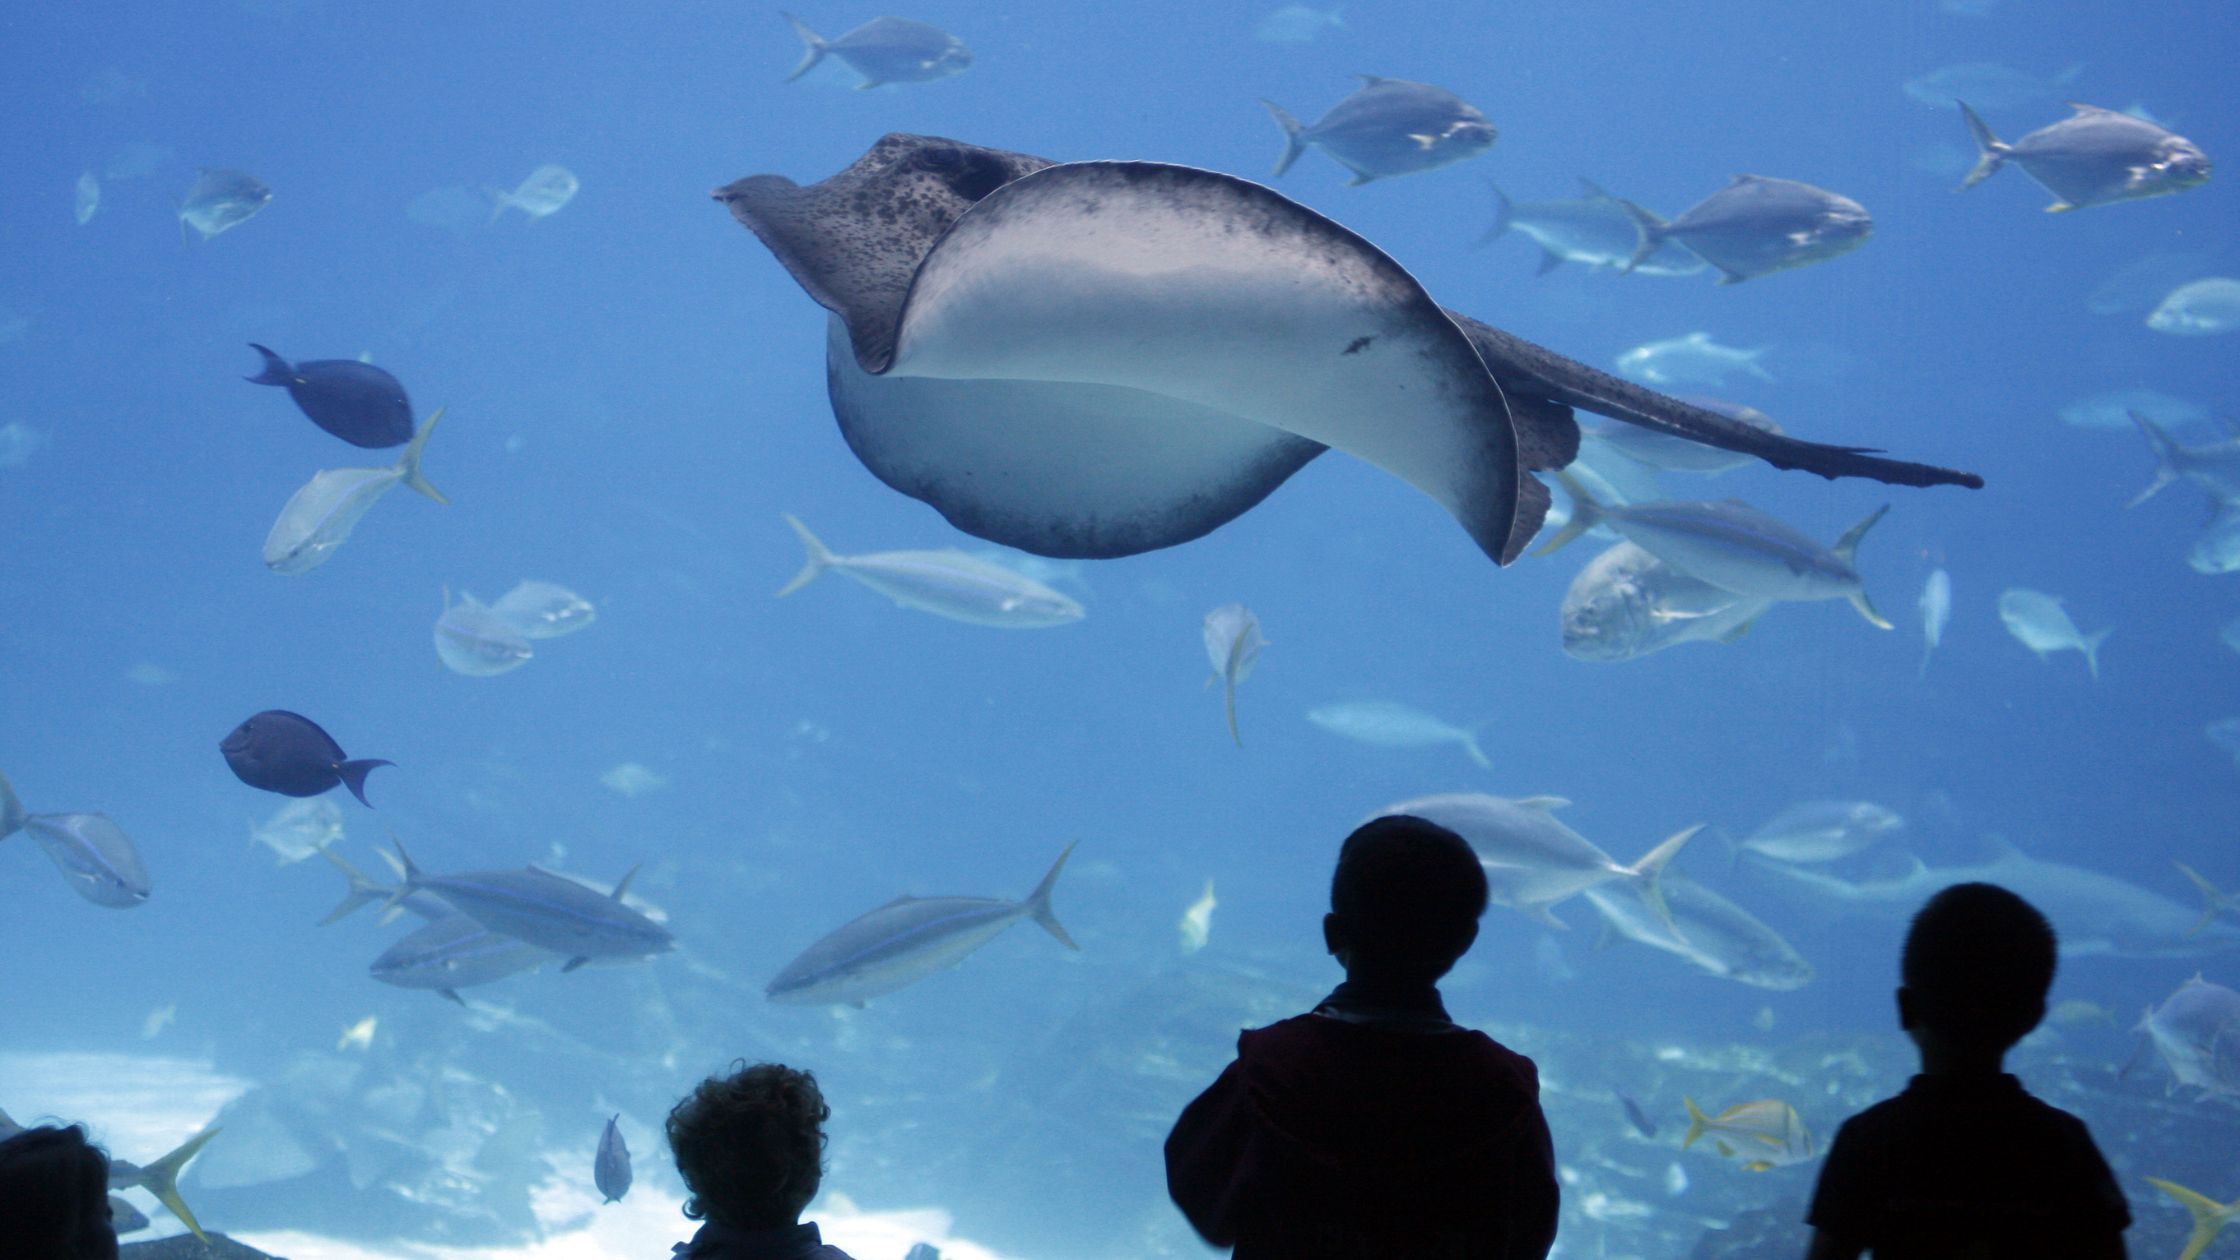 Dubai Aquarium and The Underwater Zoo tour